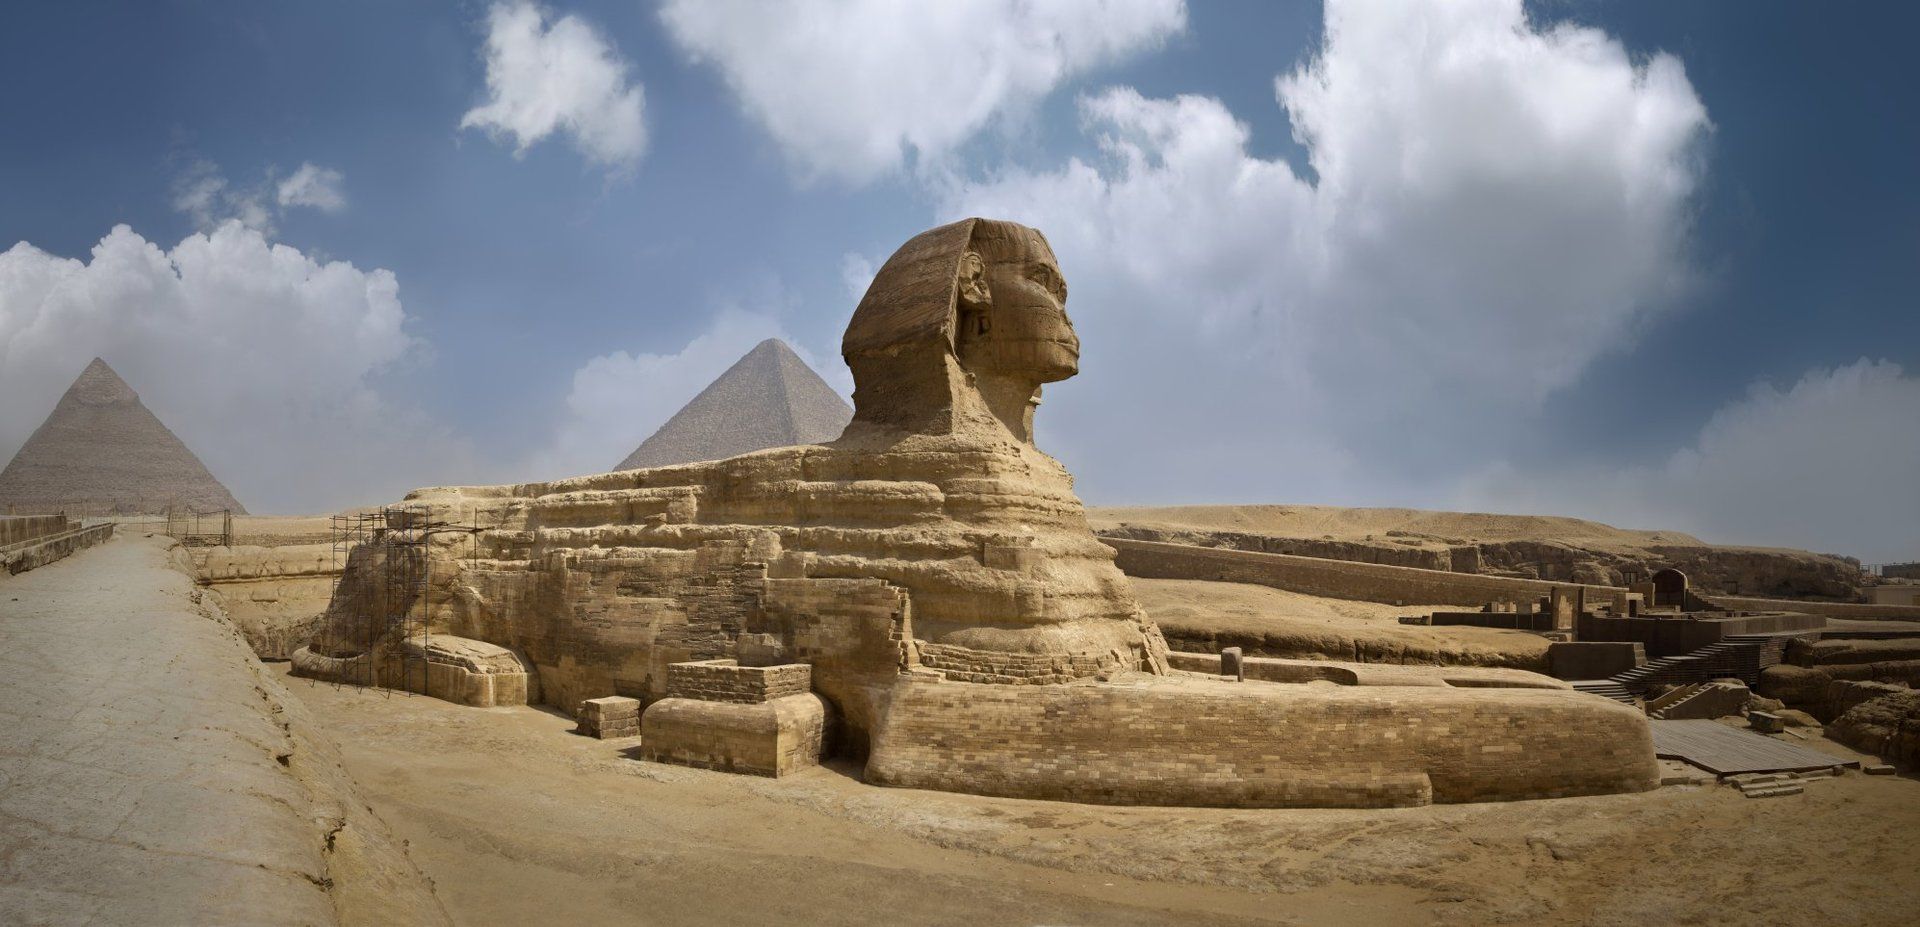 The Sphinx in the Egyptian desert.